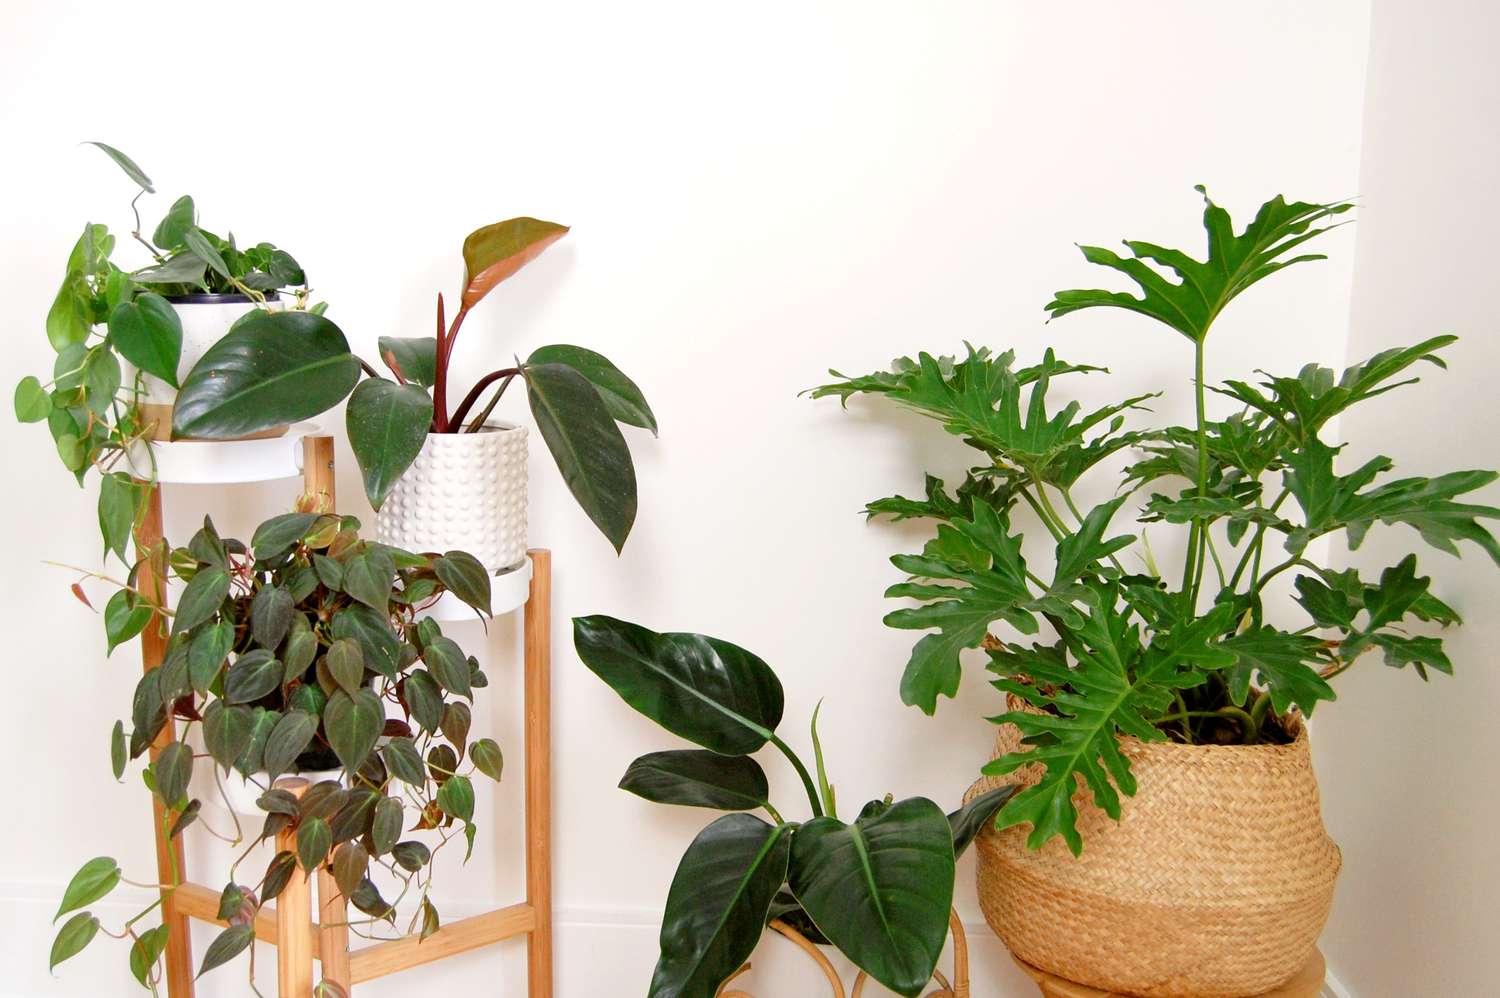 Resumen de plantas de interior de filodendro populares en una pared blanca. Incluye p. micans, p. selloum, p. 'verde imperial', filodendro hoja de corazón y filodendro cardenal negro.